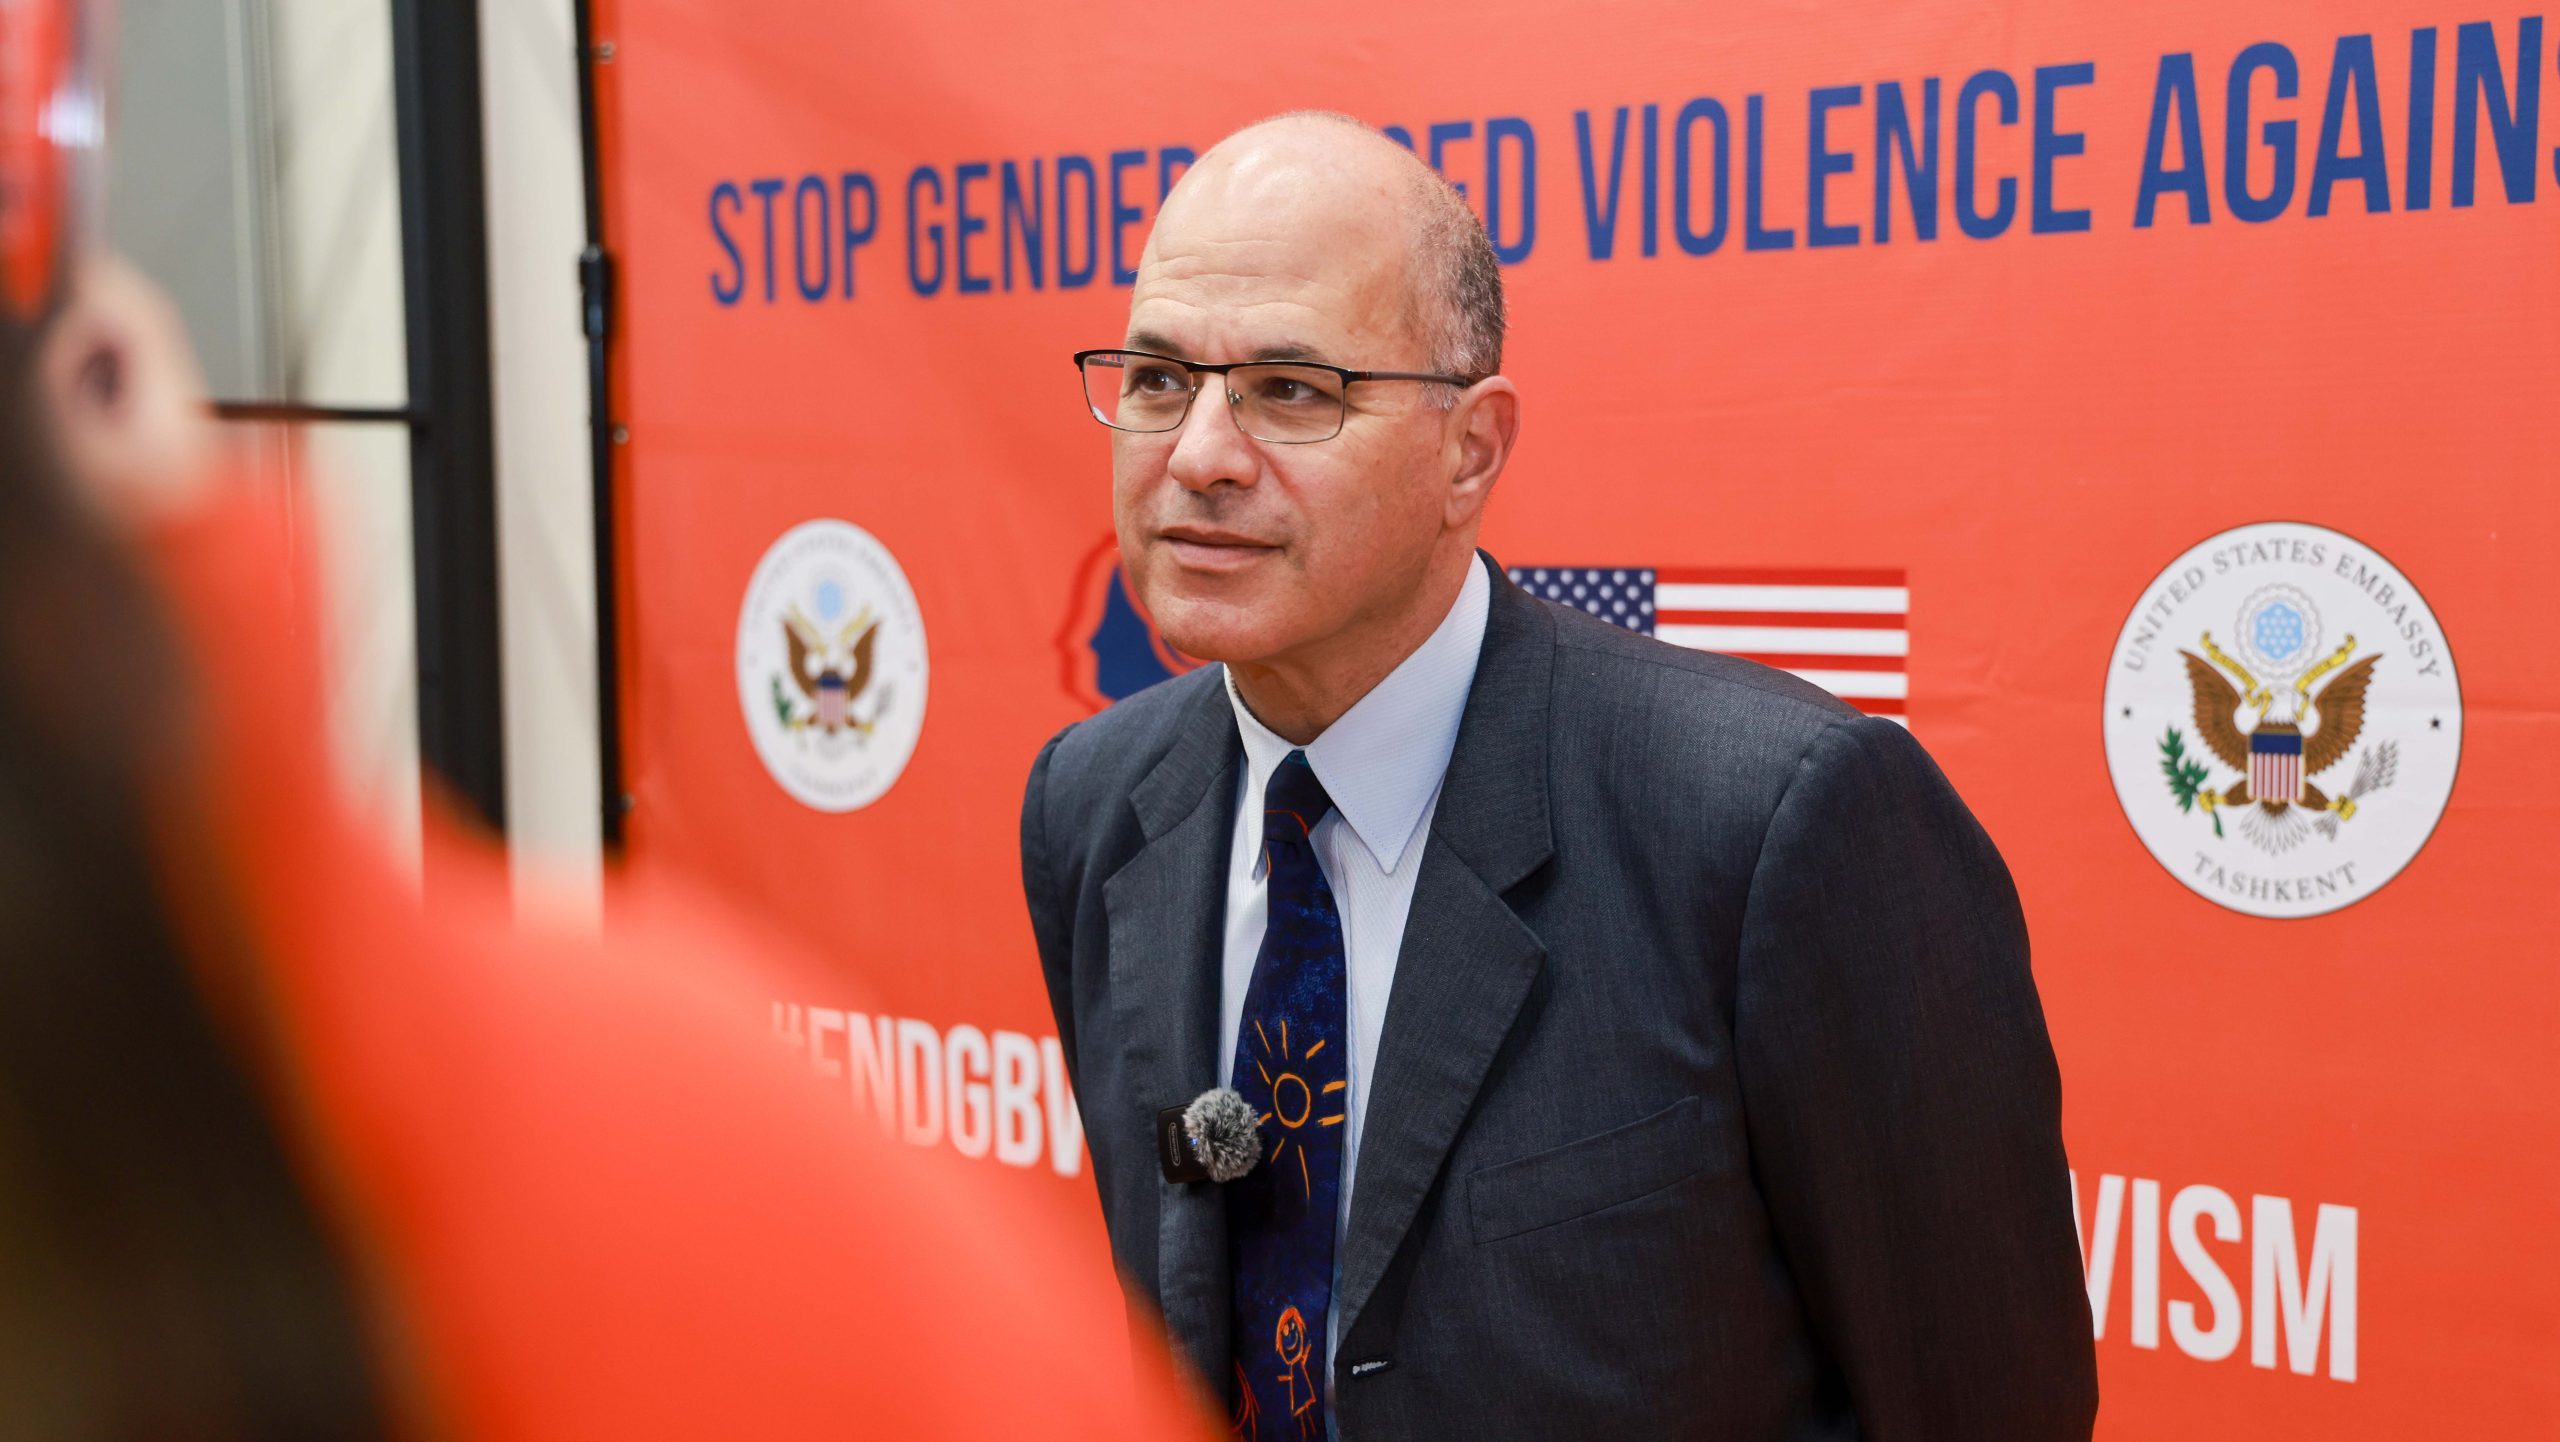 Посол США: Гендерное насилие это не ценность, традиции или культура, это насилие